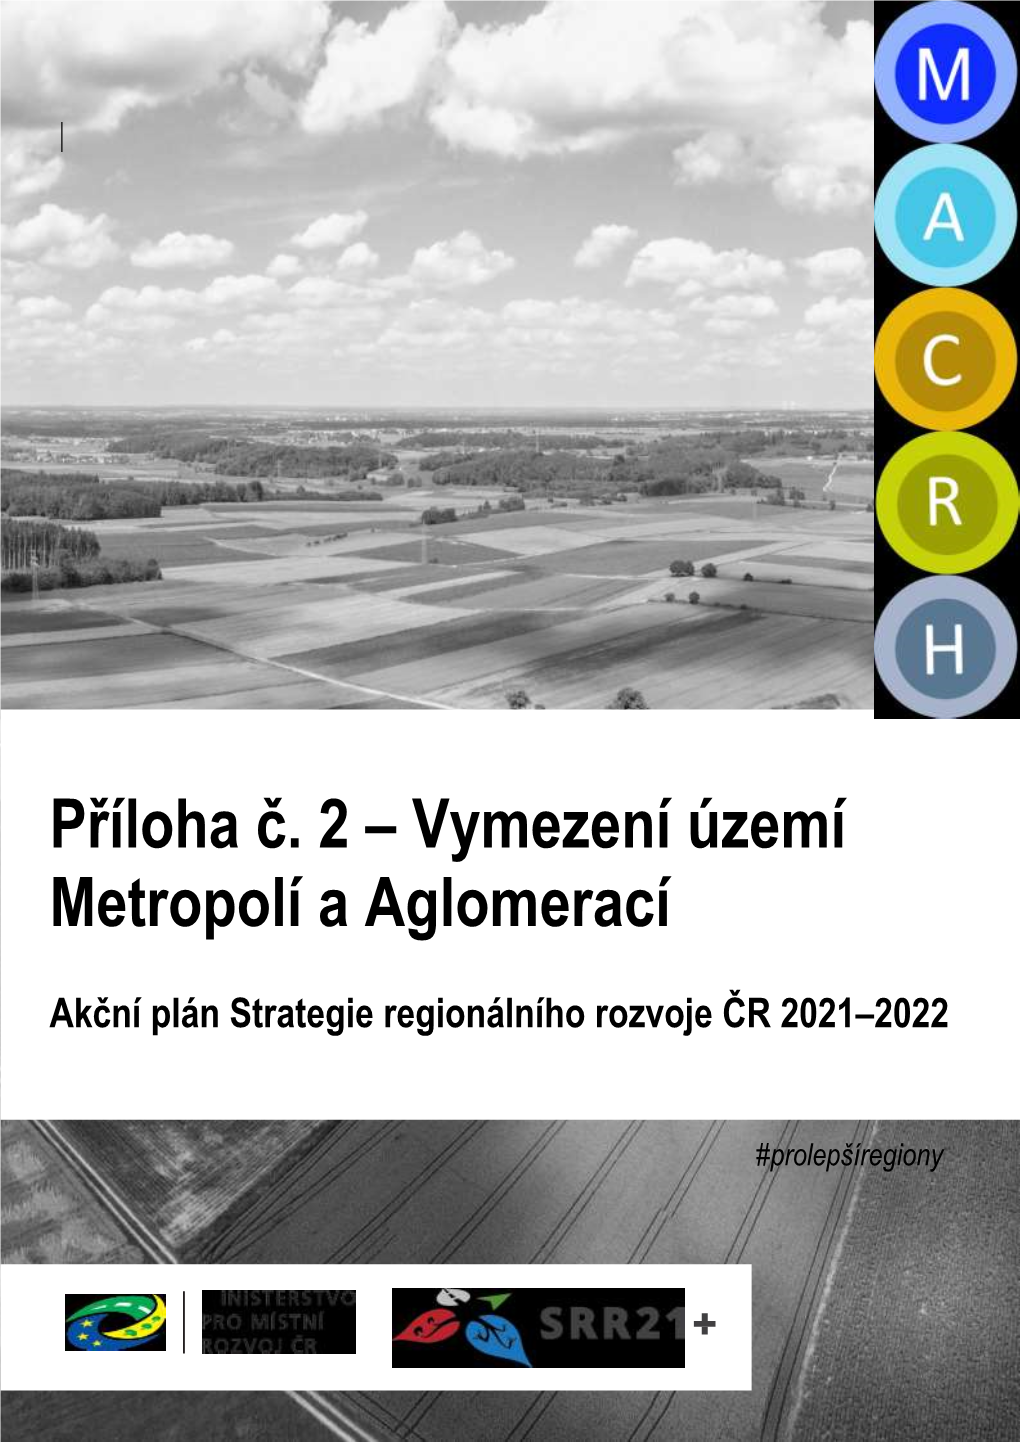 Akční Plán Strategie Regionálního Rozvoje ČR 2021-2022